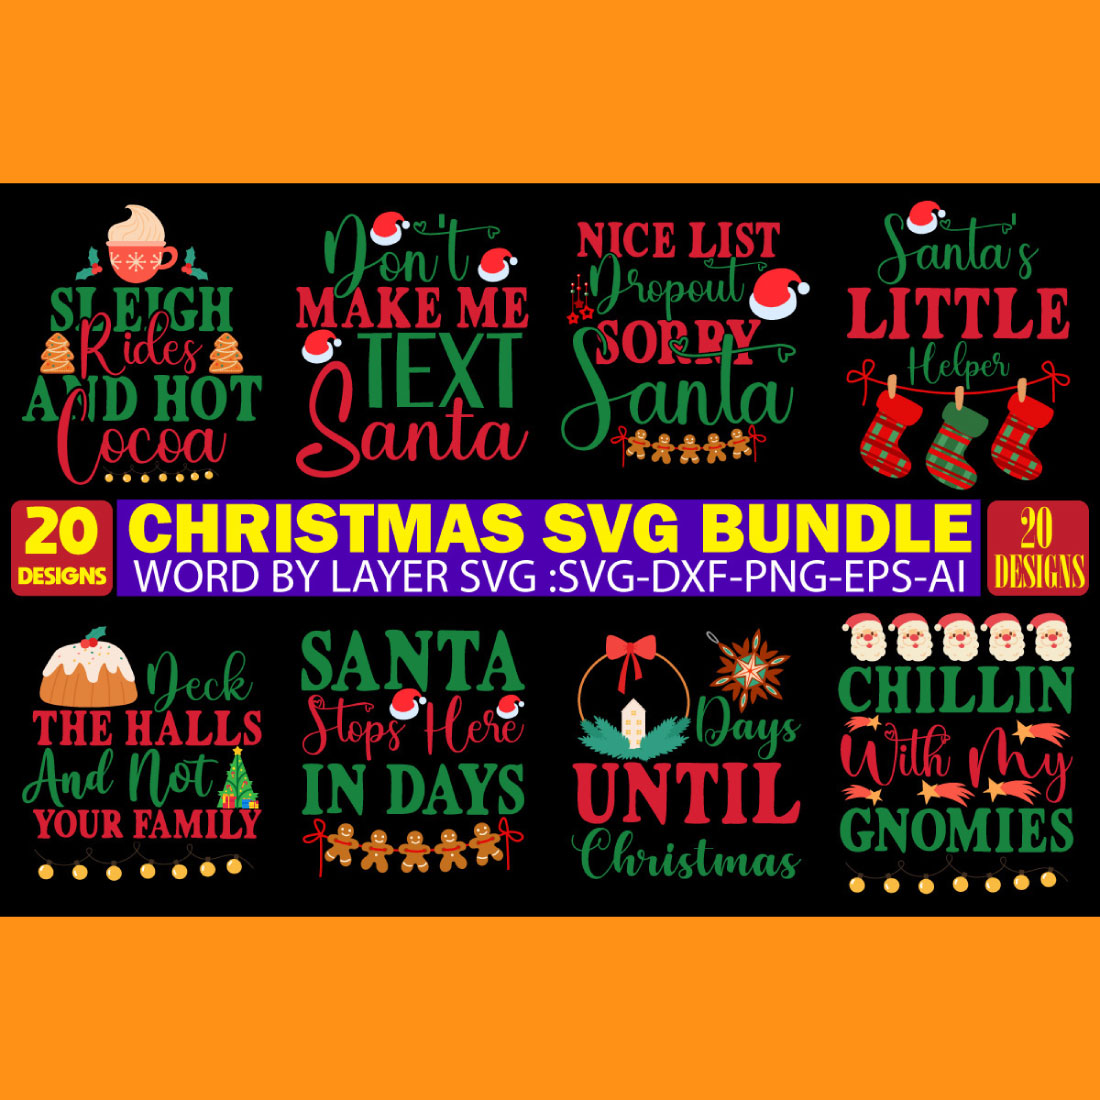 Christmas SVG Bundle main cover image.